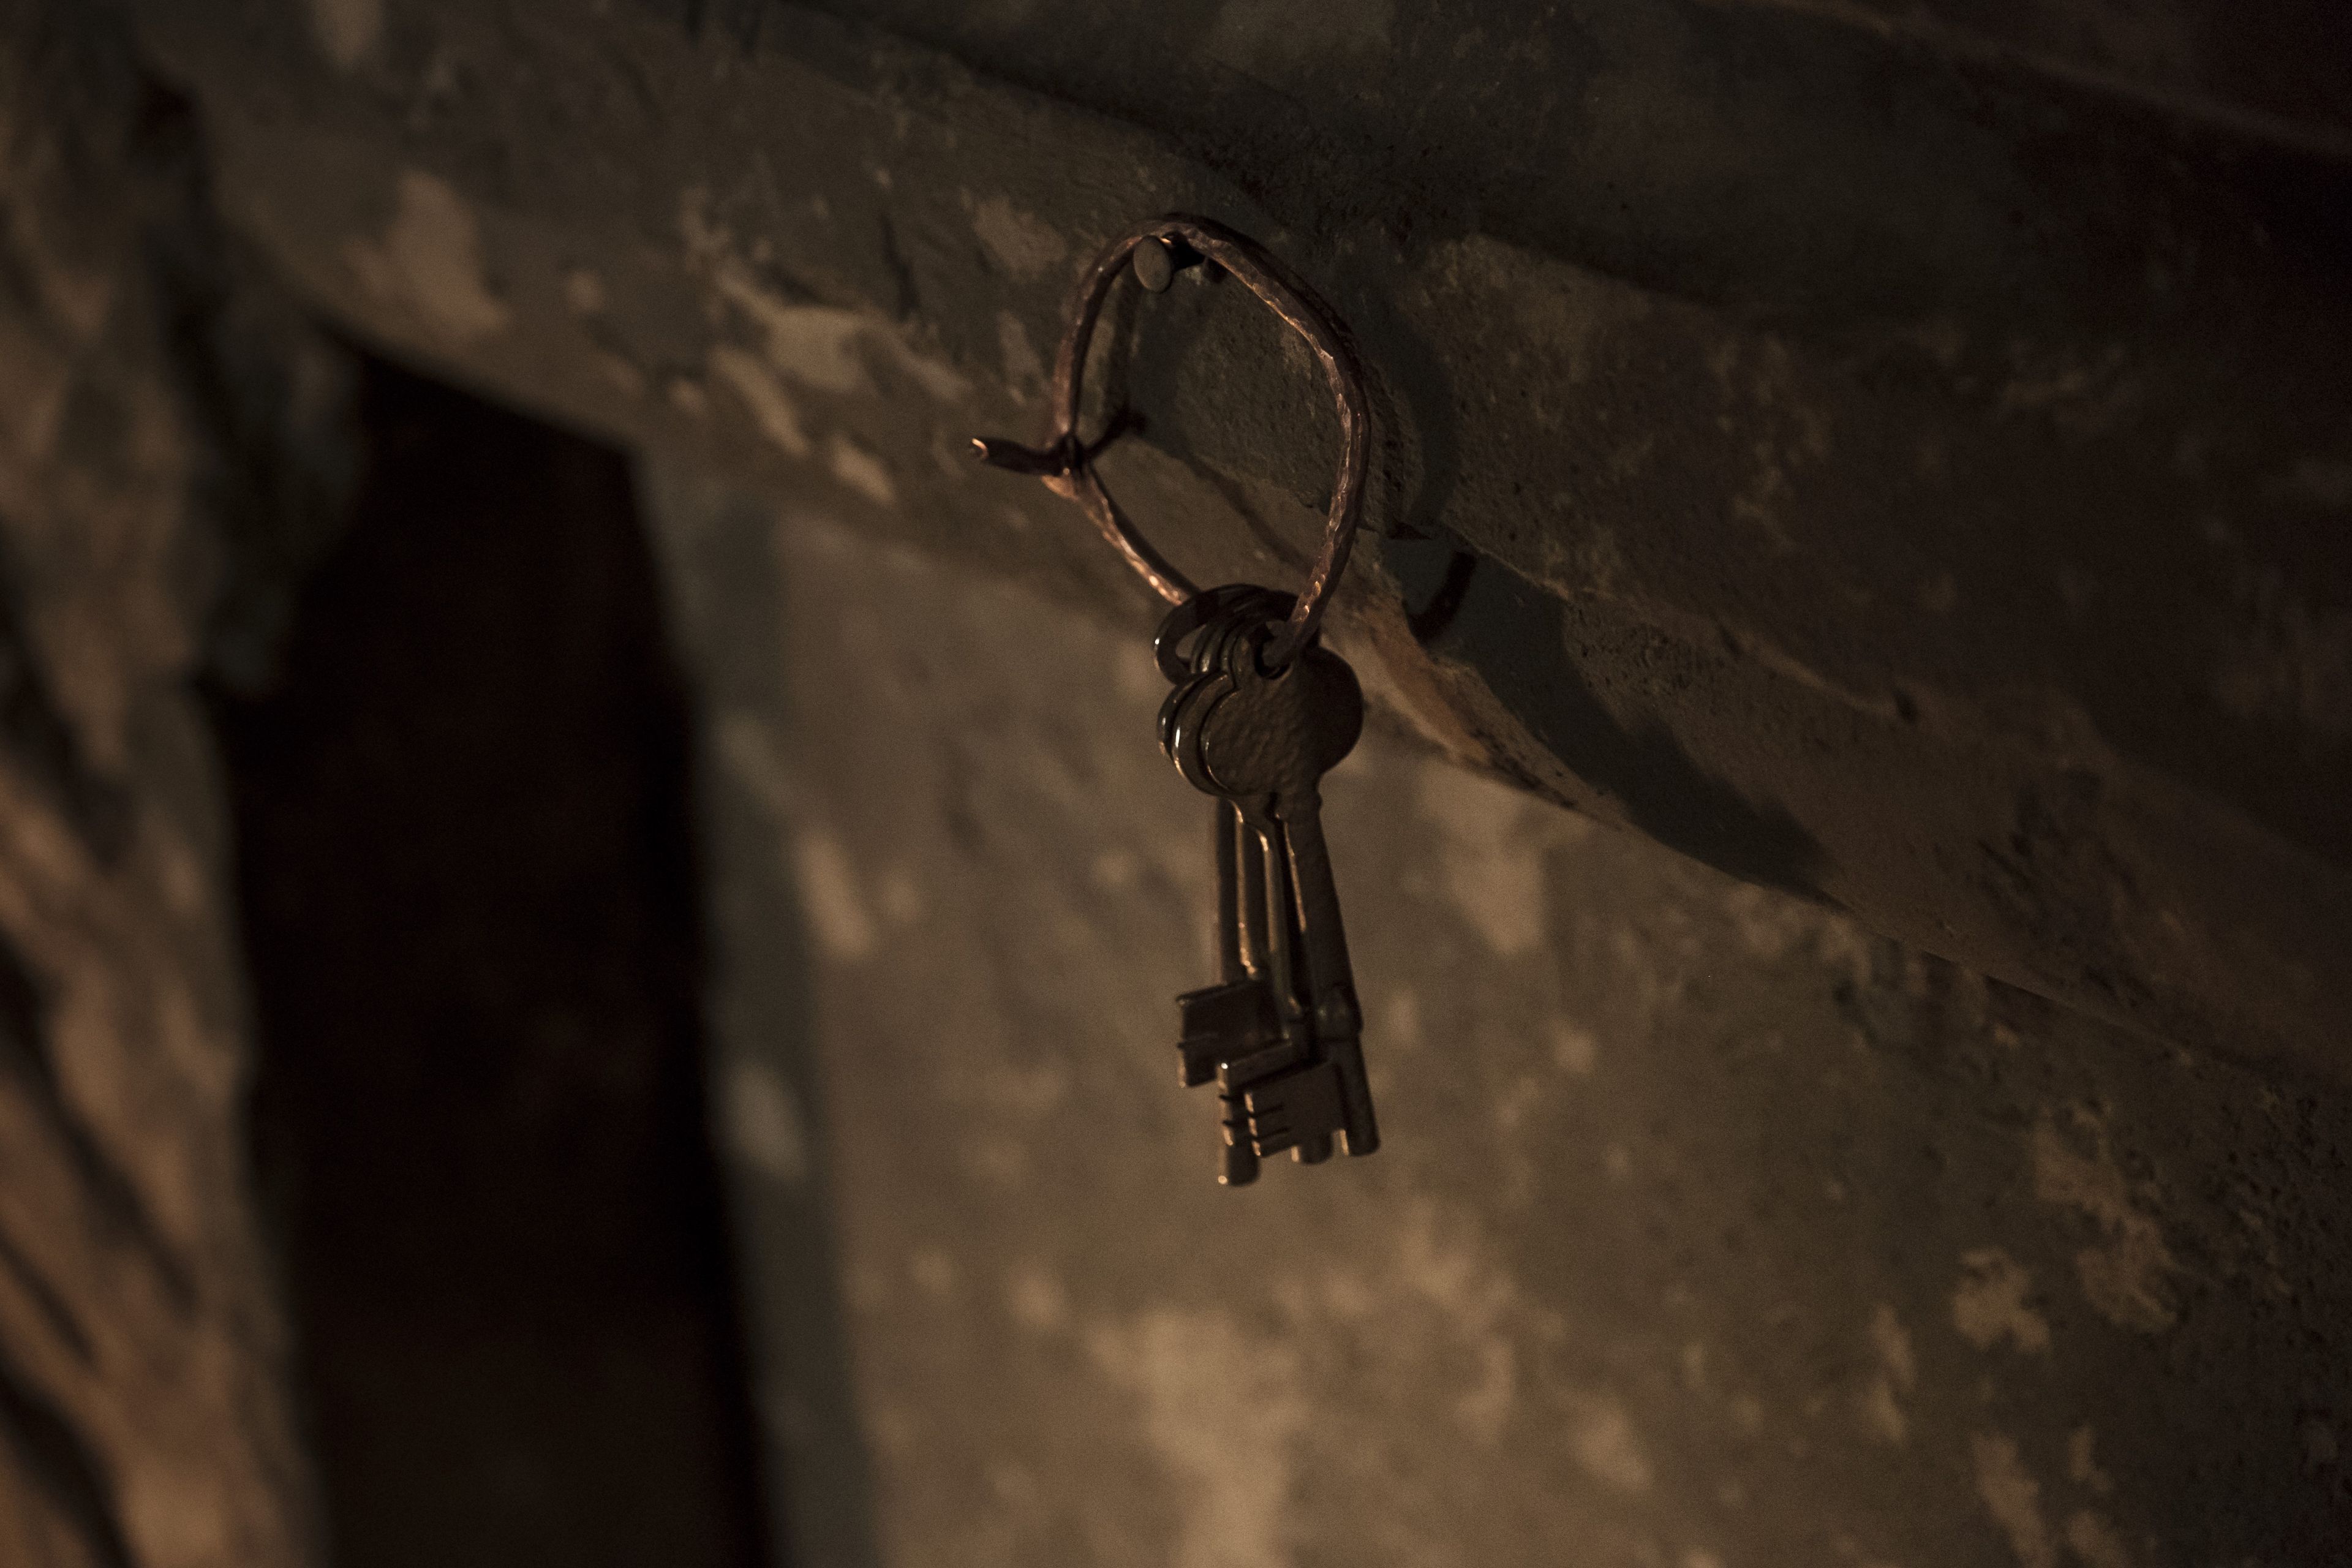 The keys to Laban's treasury hang on a peg.